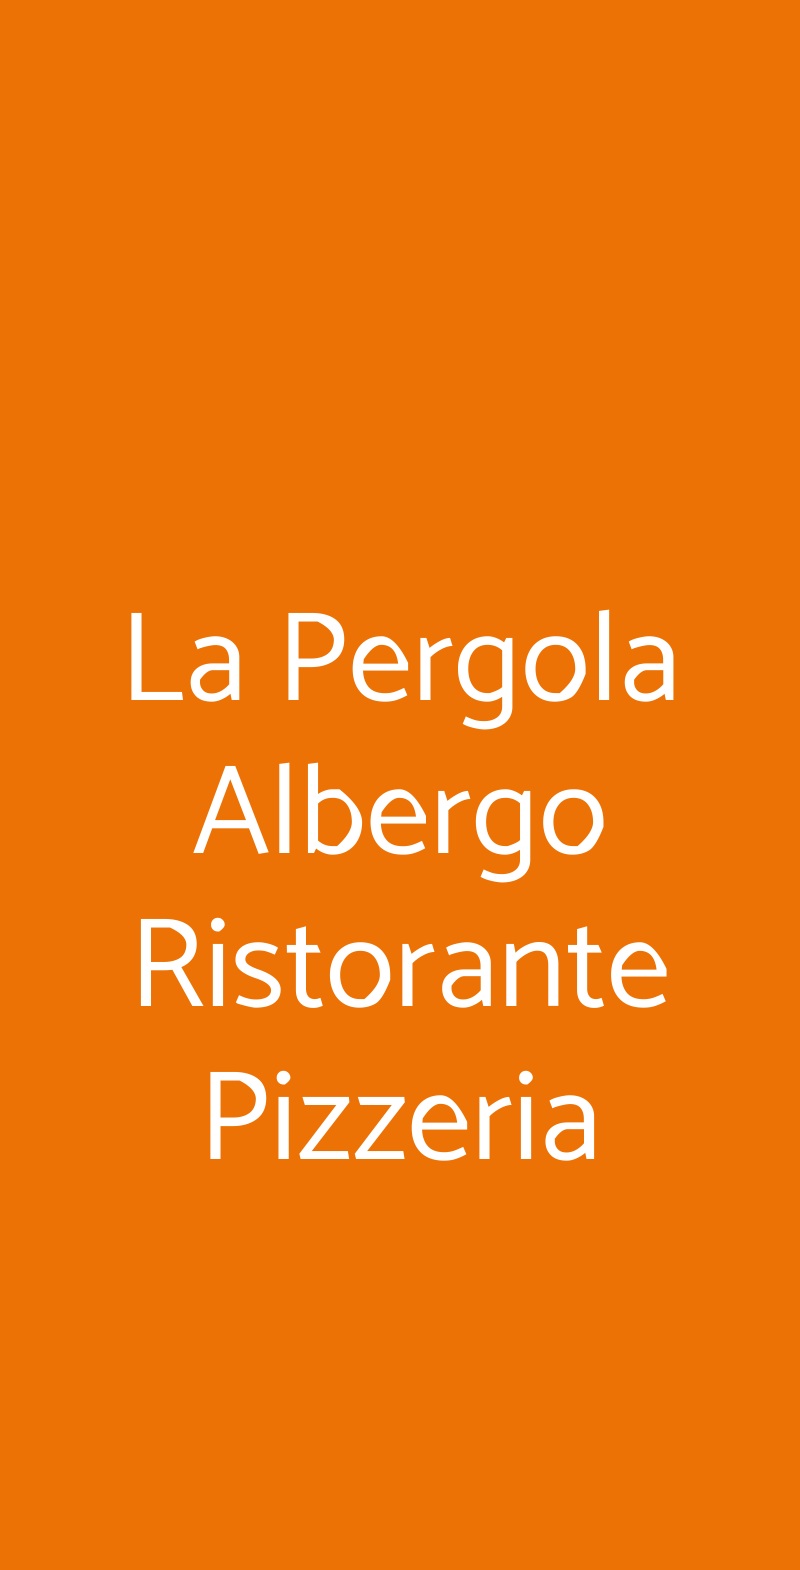 La Pergola Albergo Ristorante Pizzeria Fontanelice menù 1 pagina